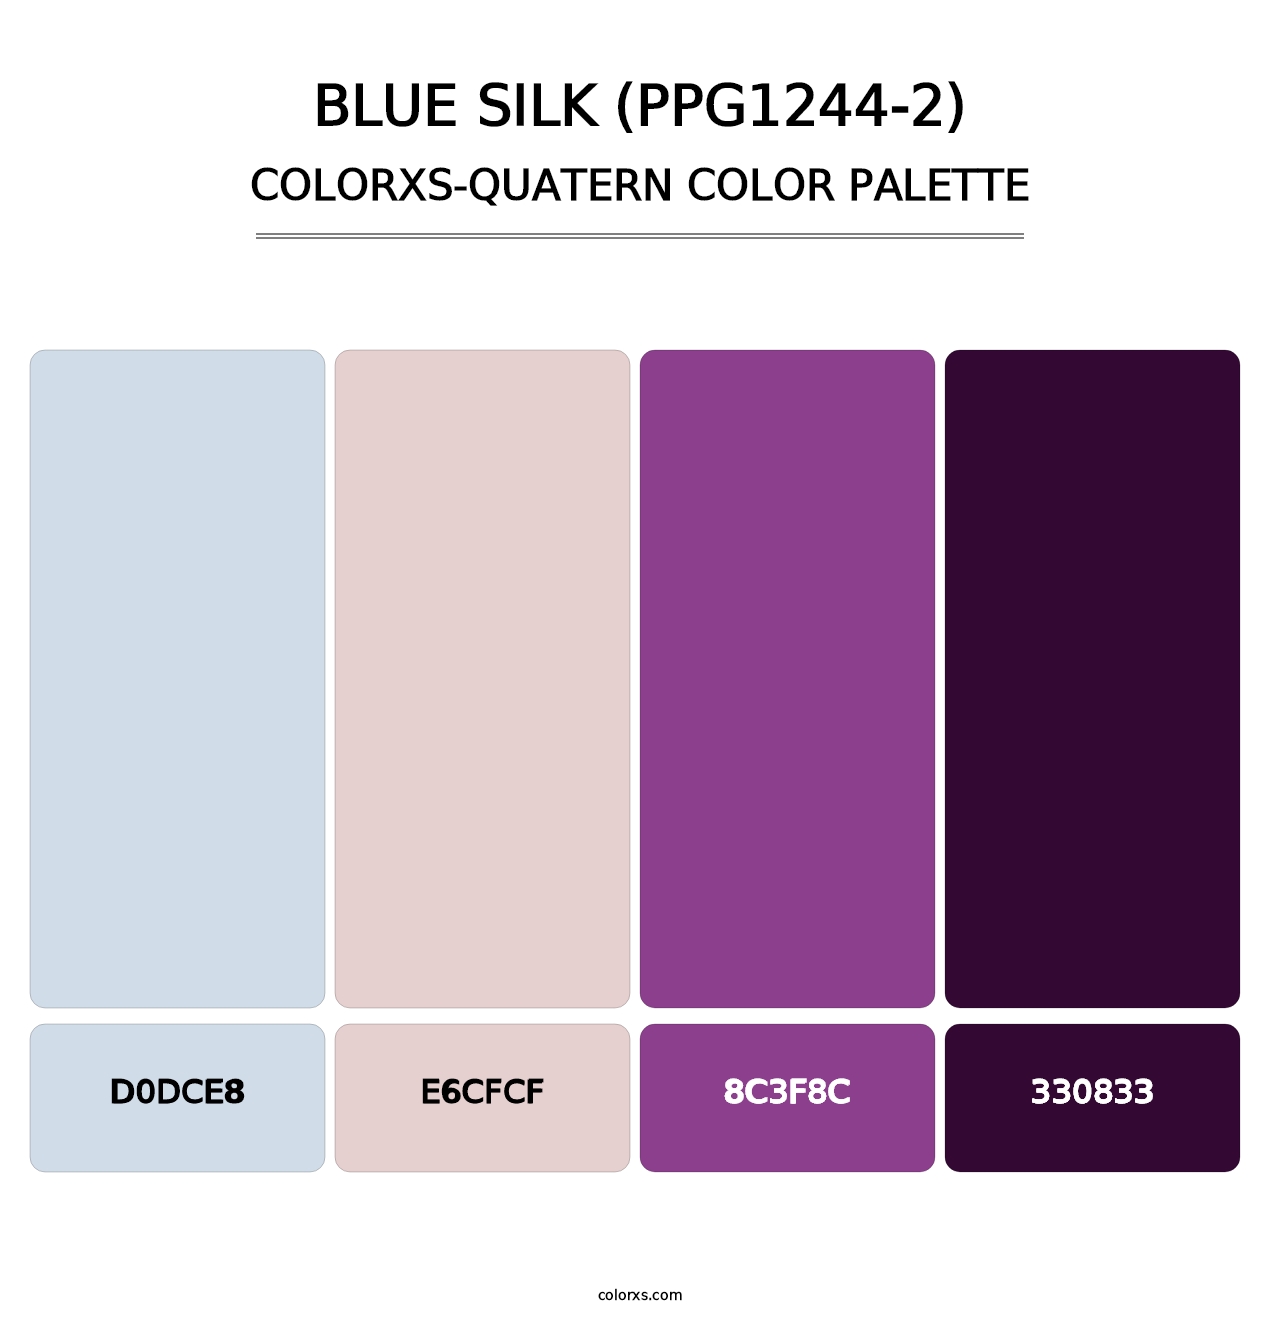 Blue Silk (PPG1244-2) - Colorxs Quatern Palette